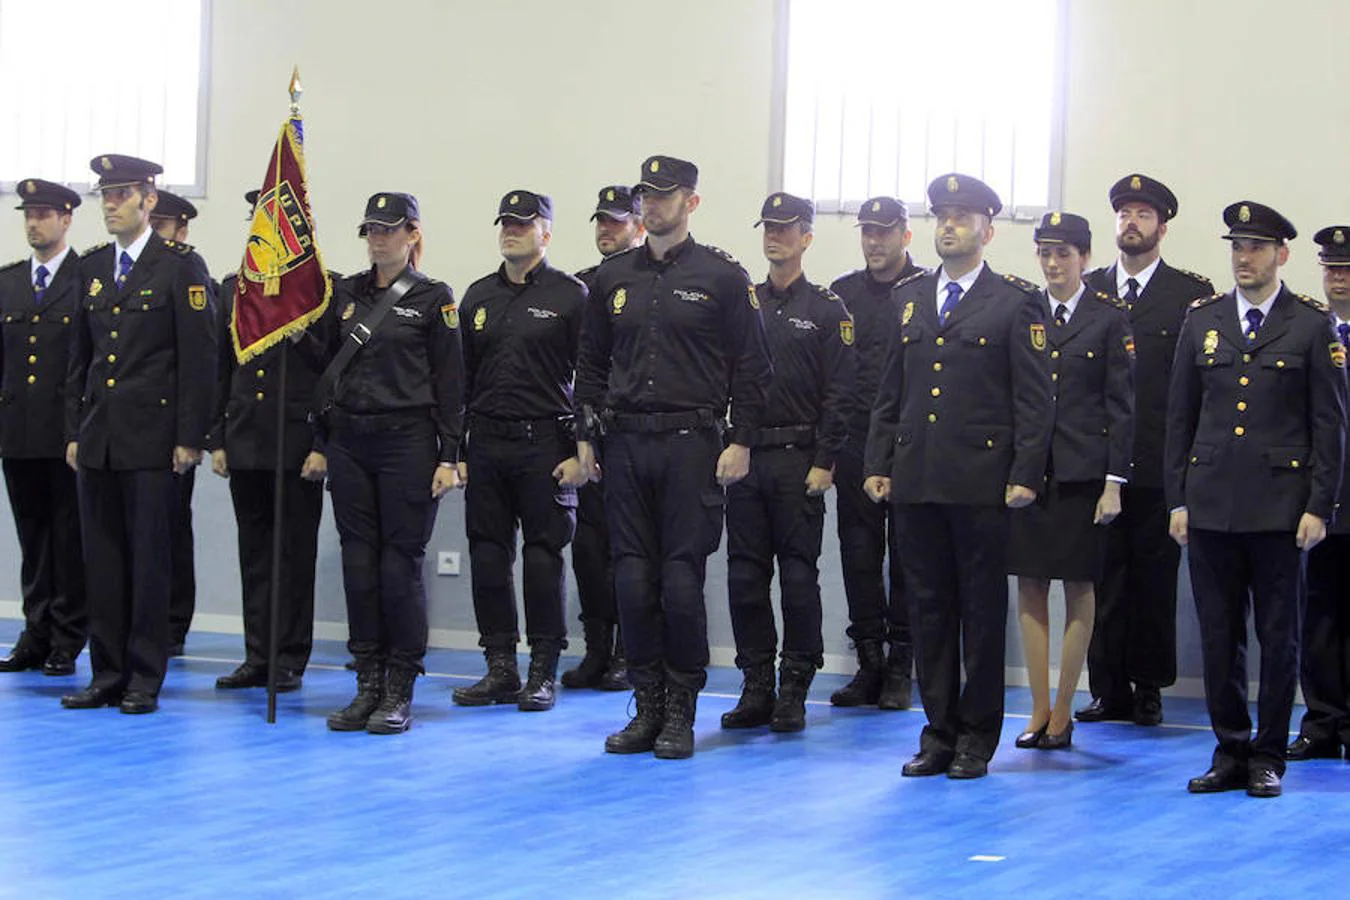 El acto de la toma de posesión de Ángel Alcázar Sempere como jefe provincial de la Policía en Toledo